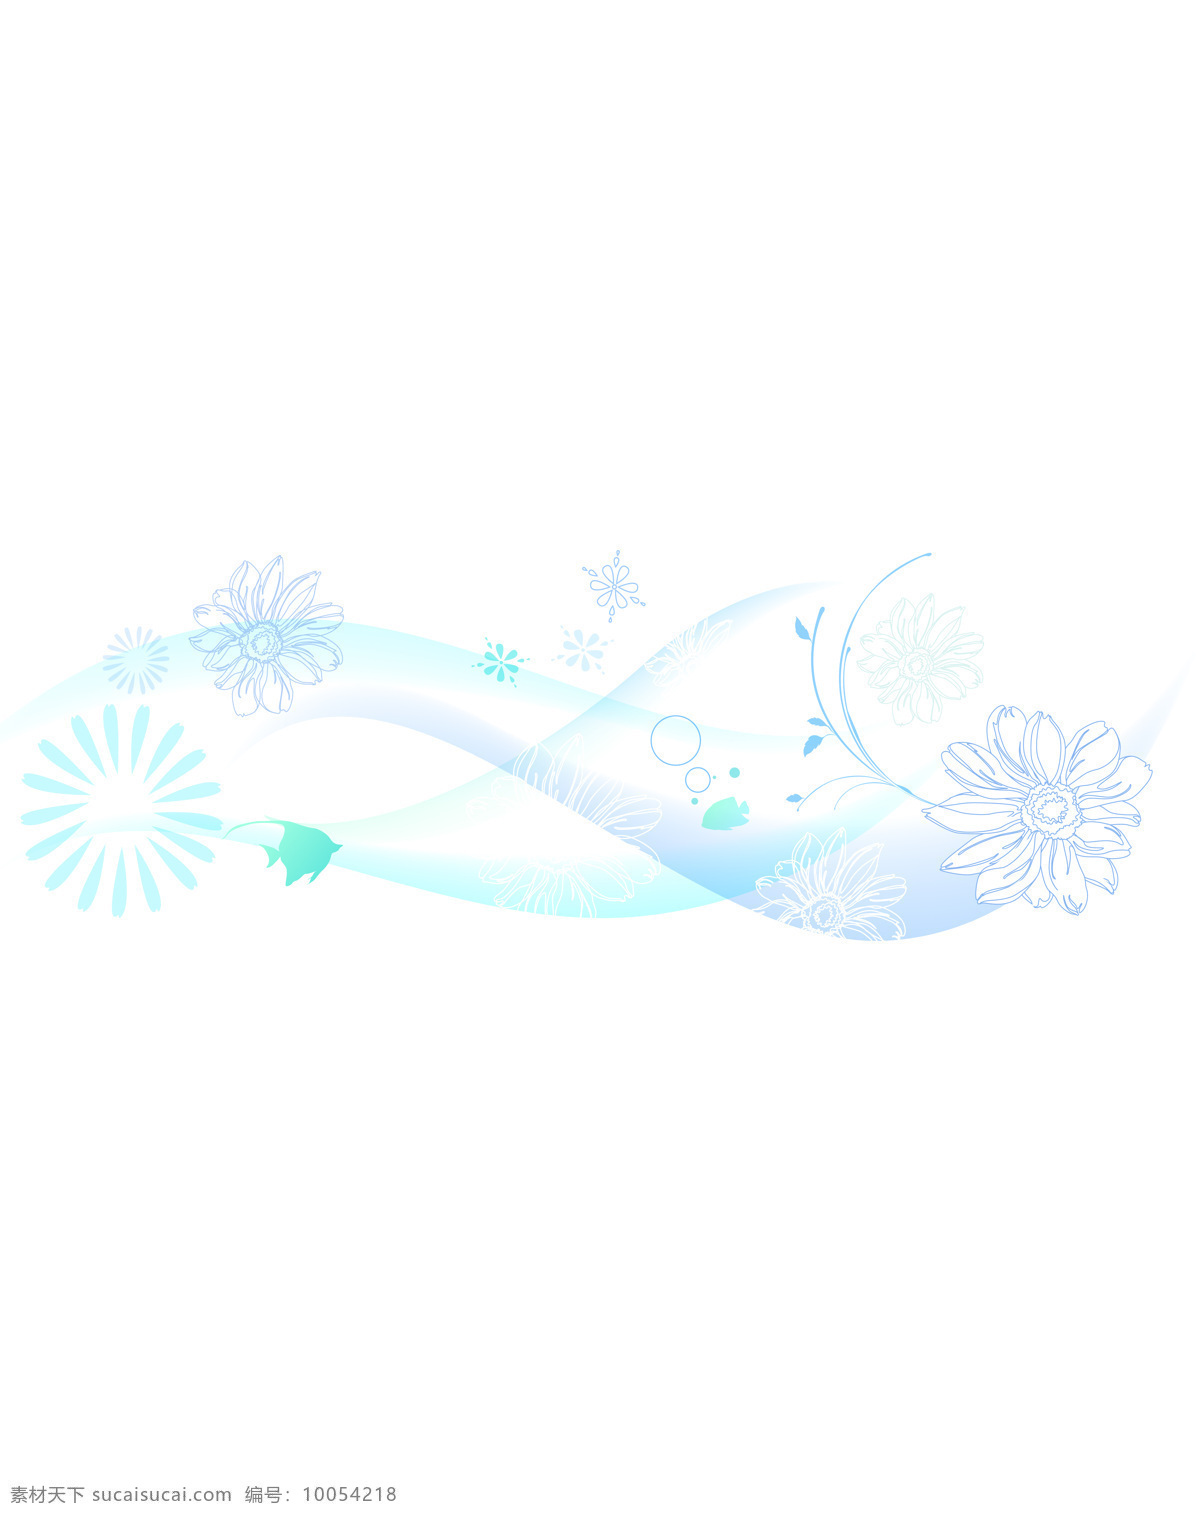 蓝色 梦幻 花朵 白色 移门 白色背景 泡泡 鱼 k0691 北欧风情 索亚卡23 移门大全23 装饰素材